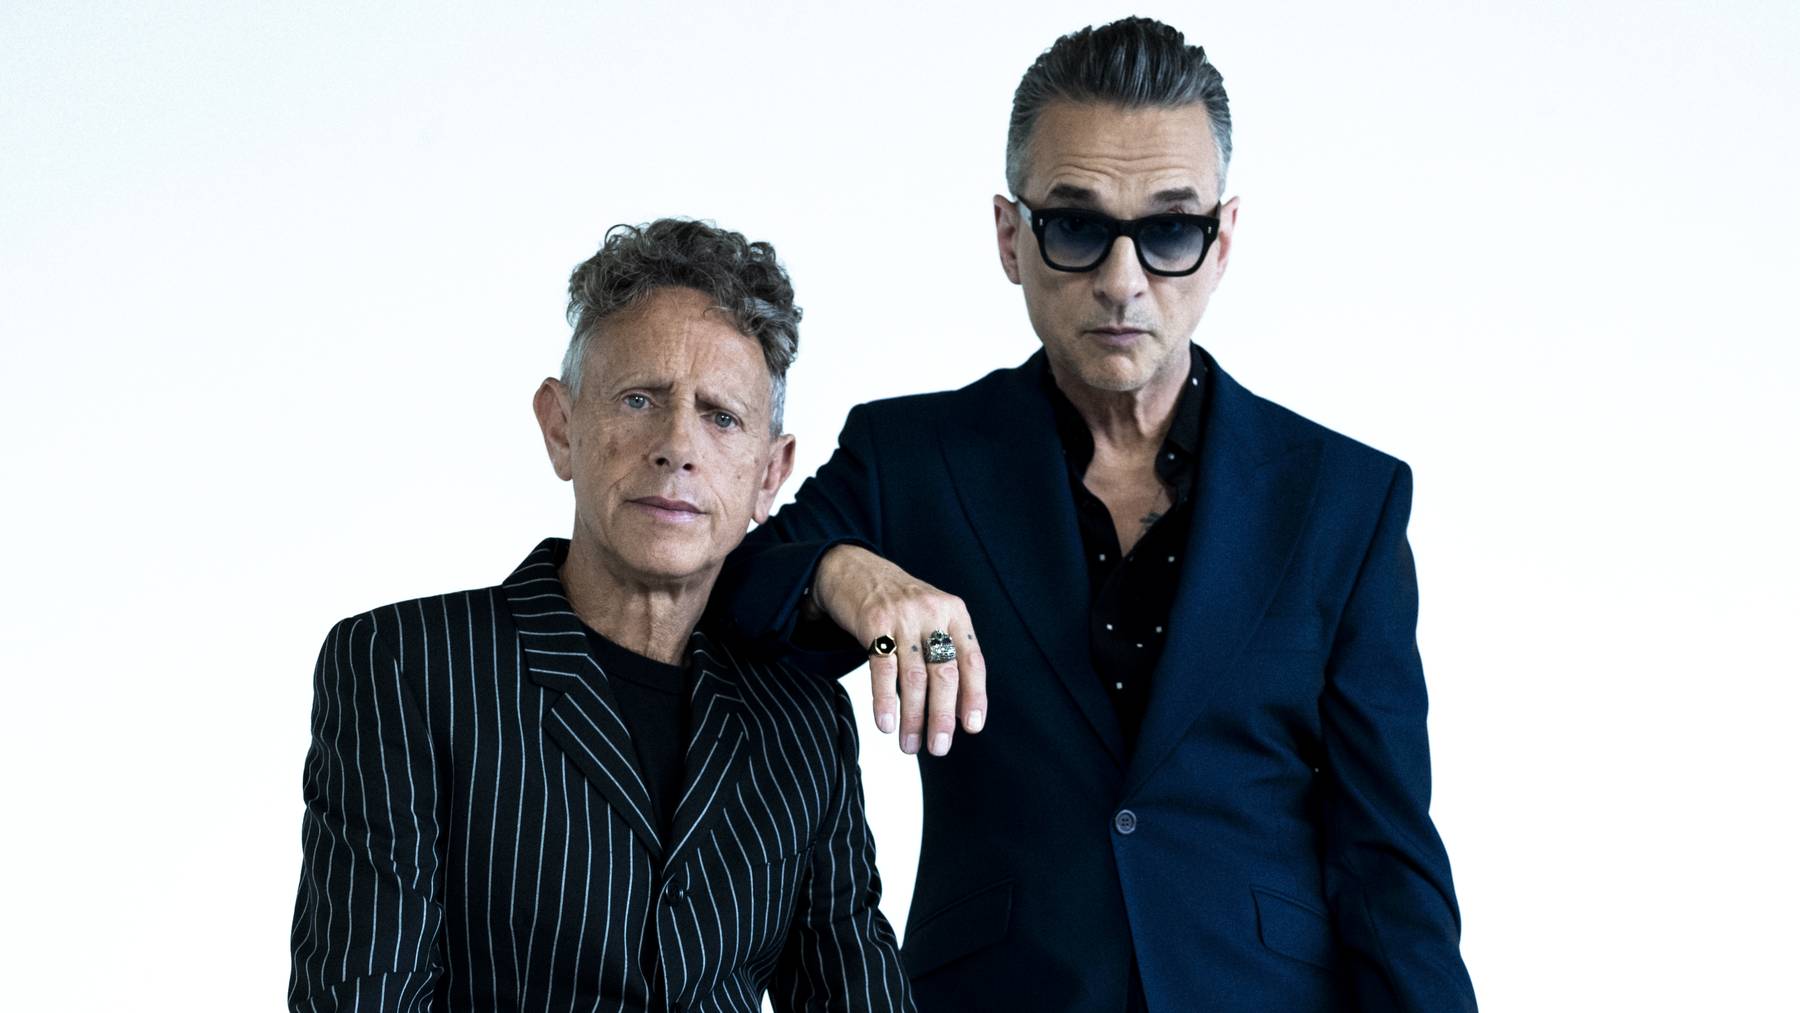 Depeche Mode - Press Image (Photo Credit - Anton Corbijn)